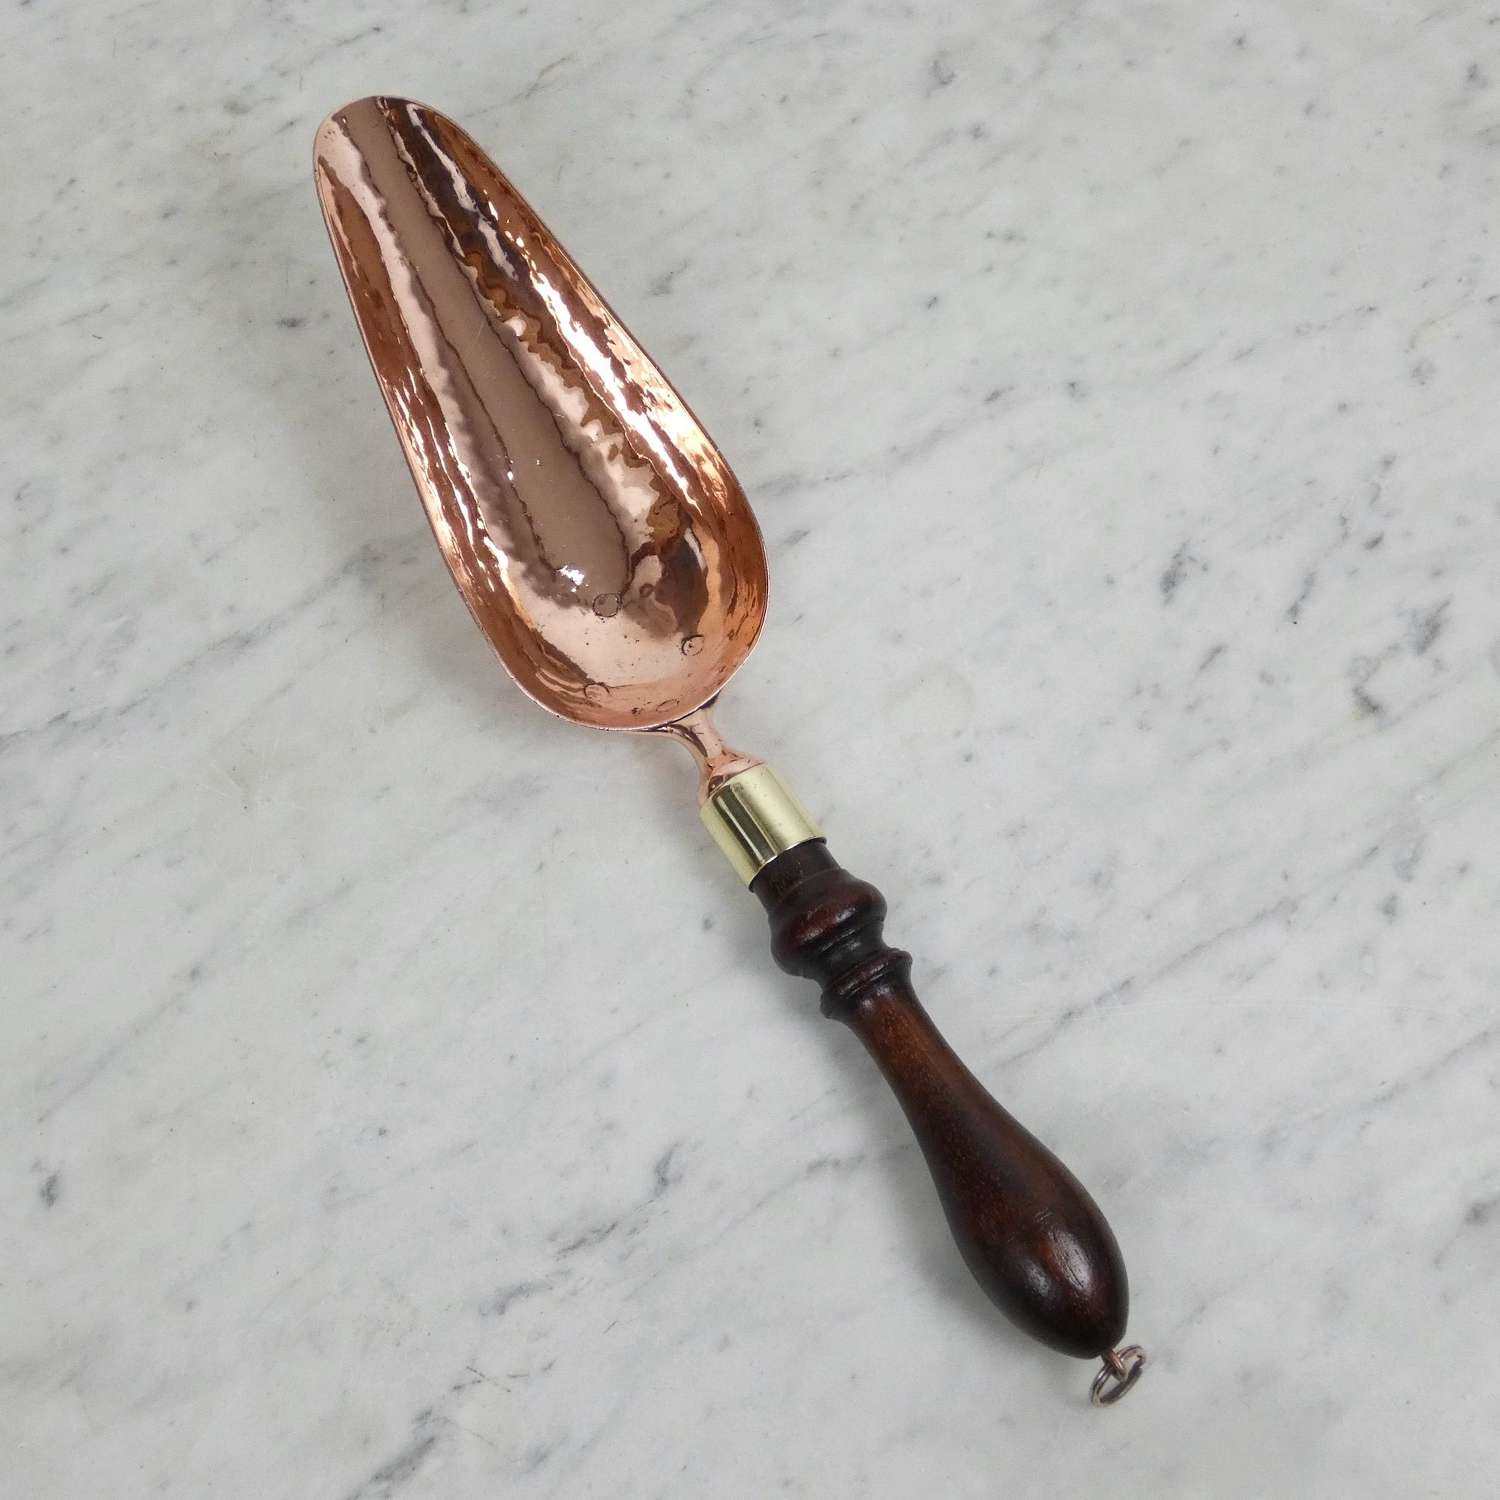 19th century copper grain scoop